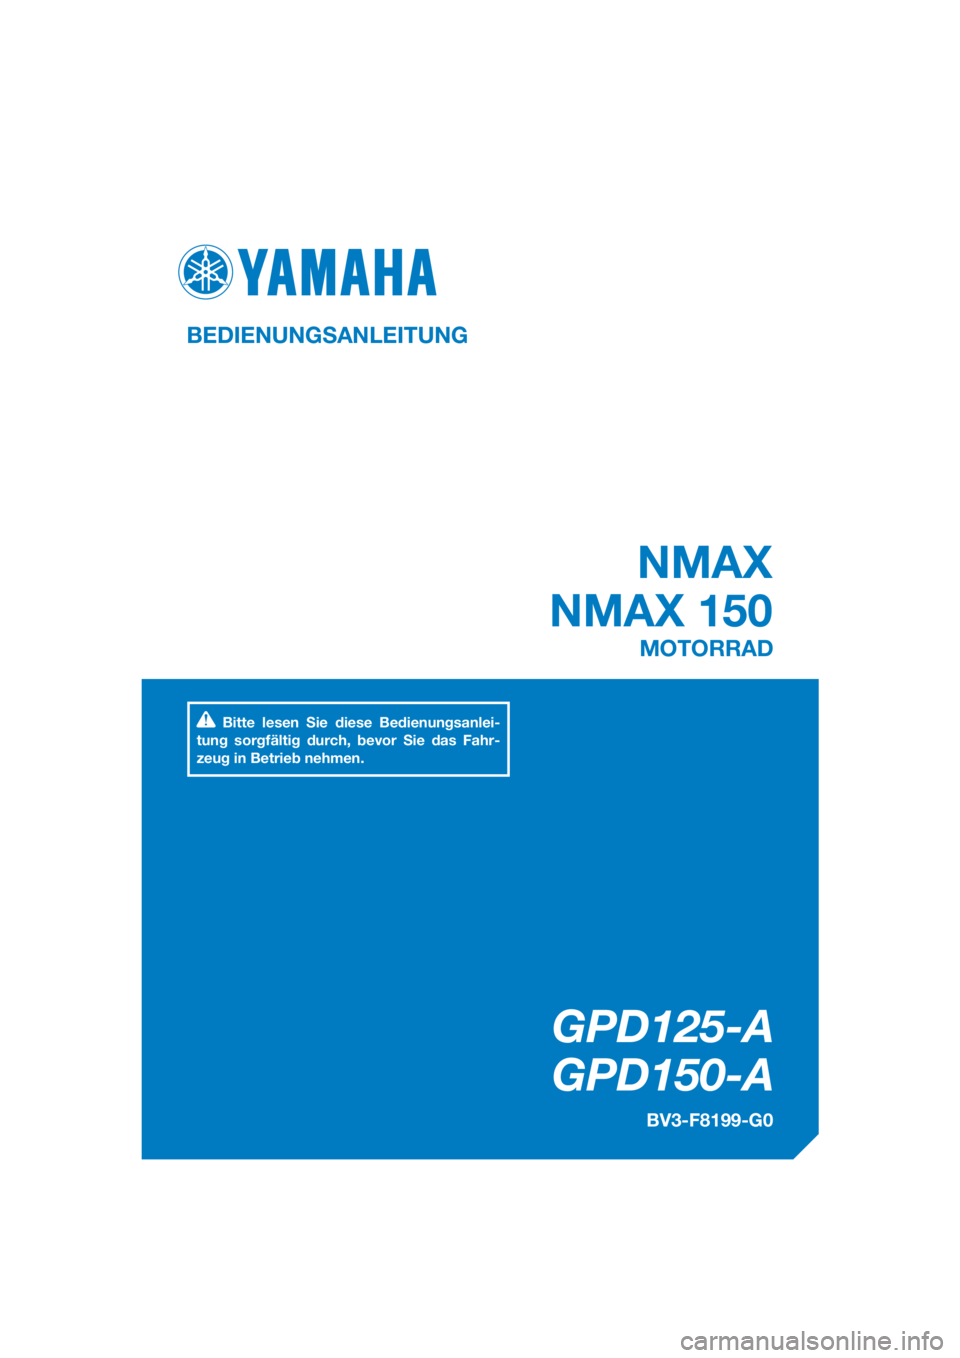 YAMAHA NMAX 125 2018  Betriebsanleitungen (in German) DIC183
GPD125-A
GPD150-A
NMAX
NMAX 150
BEDIENUNGSANLEITUNG
BV3-F8199-G0
MOTORRAD
Bitte lesen Sie diese Bedienungsanlei-
tung sorgfältig durch, bevor Sie das Fahr-
zeug in Betrieb nehmen.
[German  (G)